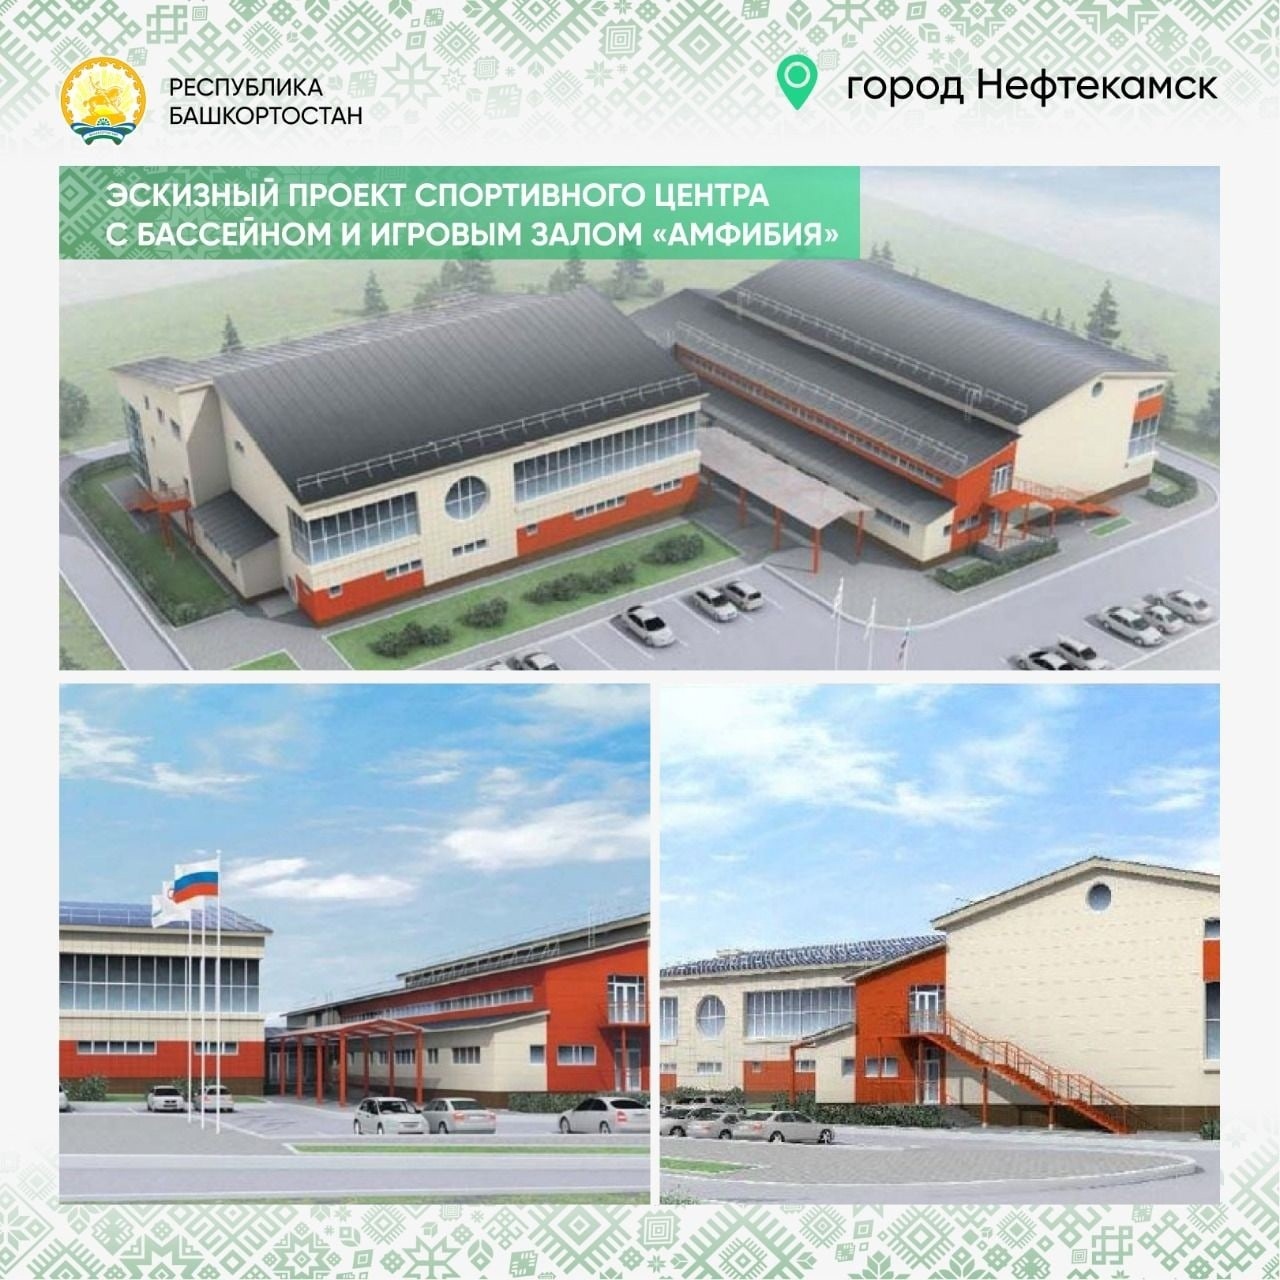 748 млн рублей  получит республика Башкортостан на строительство новых спортивных объектов по проекту «Бизнес-спринт»